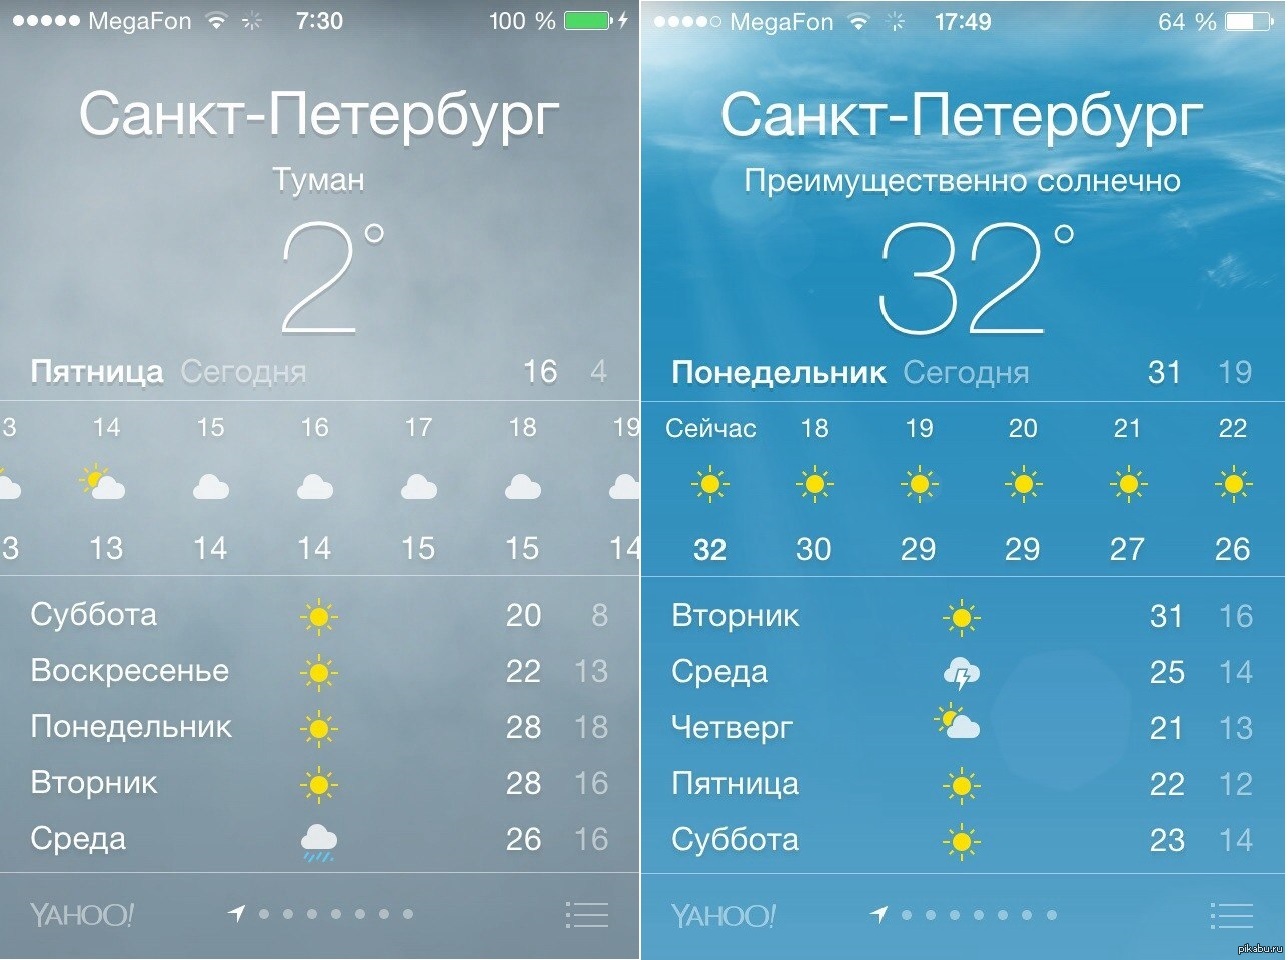 Погода послезавтра днем. Погода всанкитпетербурге. Погода в Санкт-петербургепе. Прогноз погоды в Санкт-Петербурге. Погода в Санкт-Петербурге на сегодня.